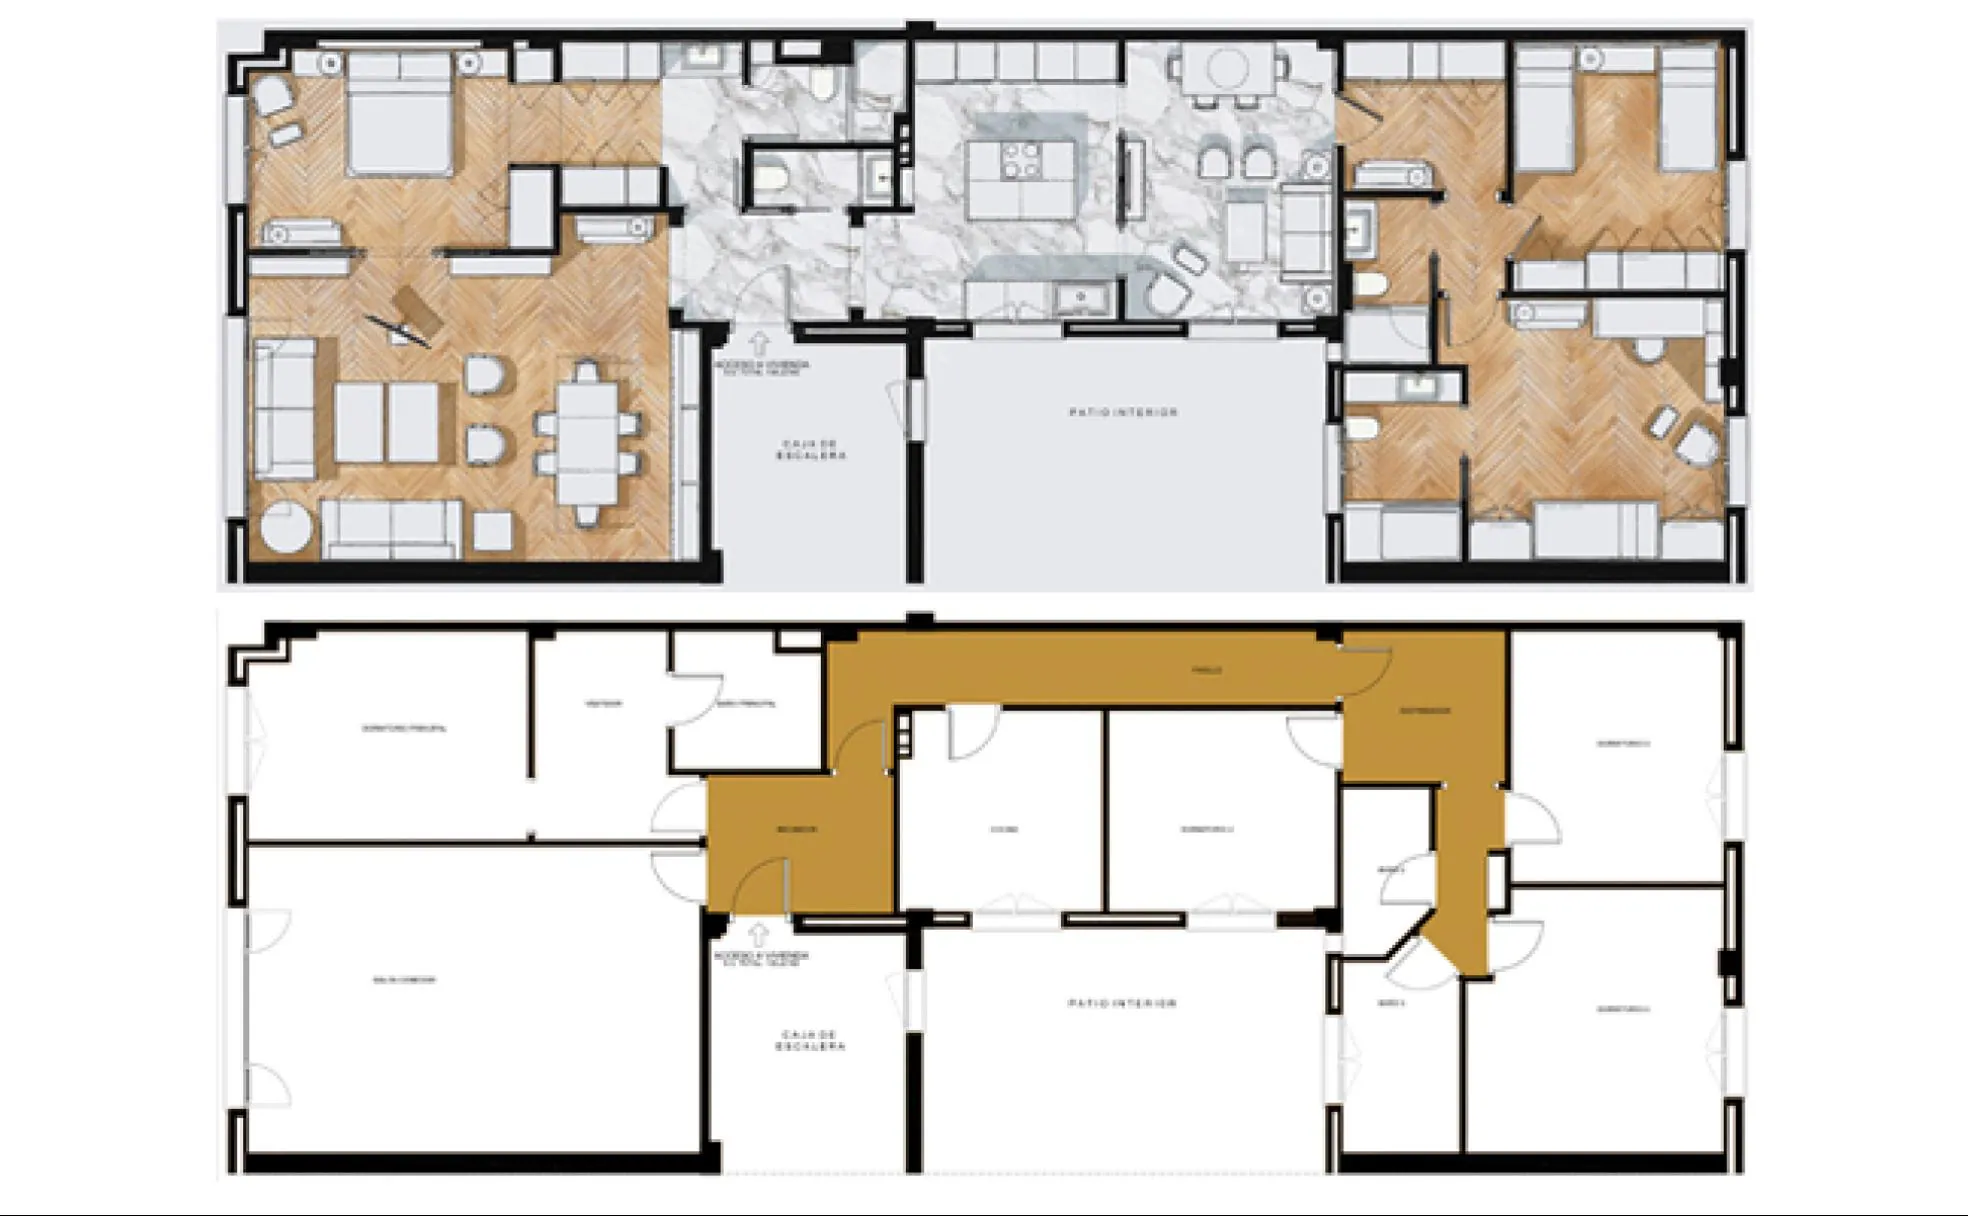 Arriba, un plano de la casa actual. Abajo, un plano de la misma vivienda según la distribución típica de hace unos años.